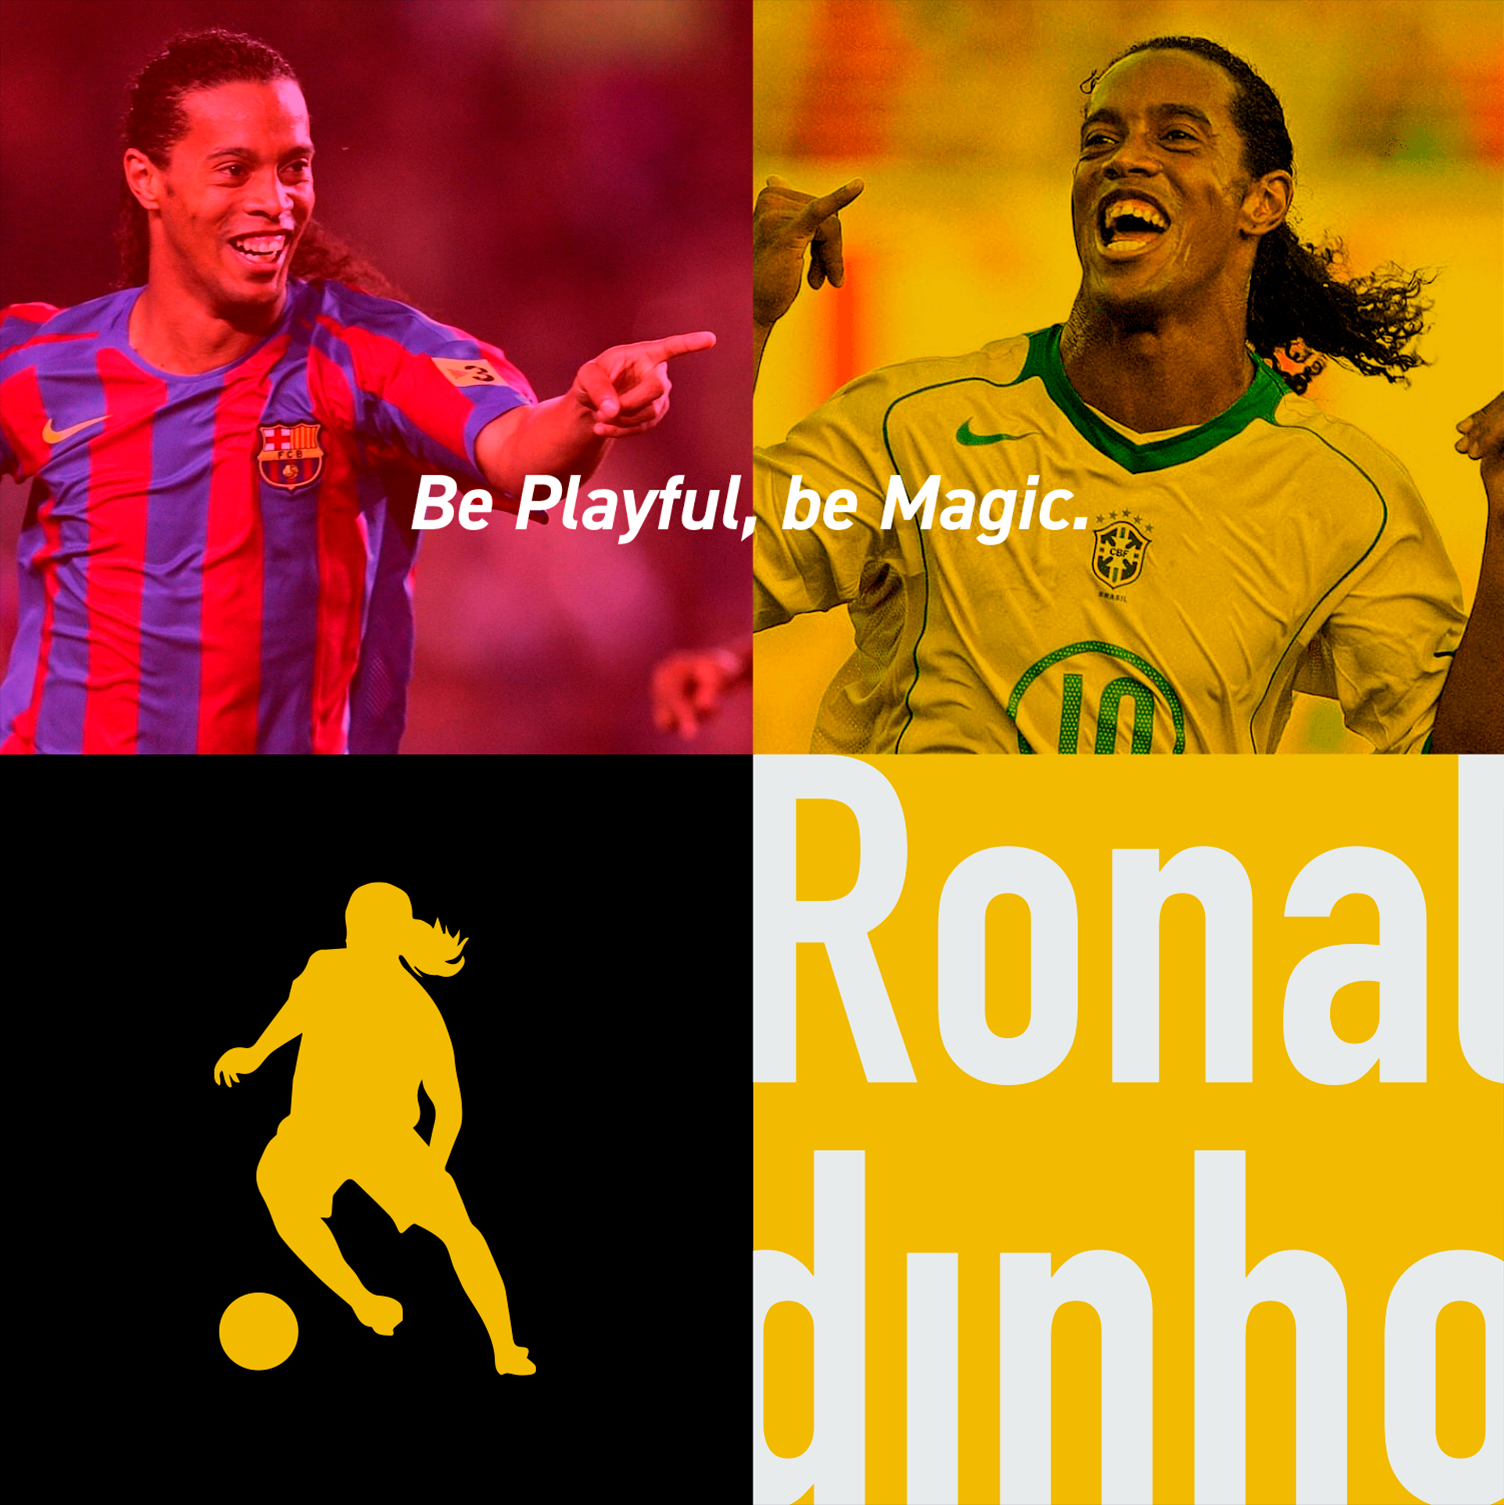 Ronaldinho Soccer Academy Design